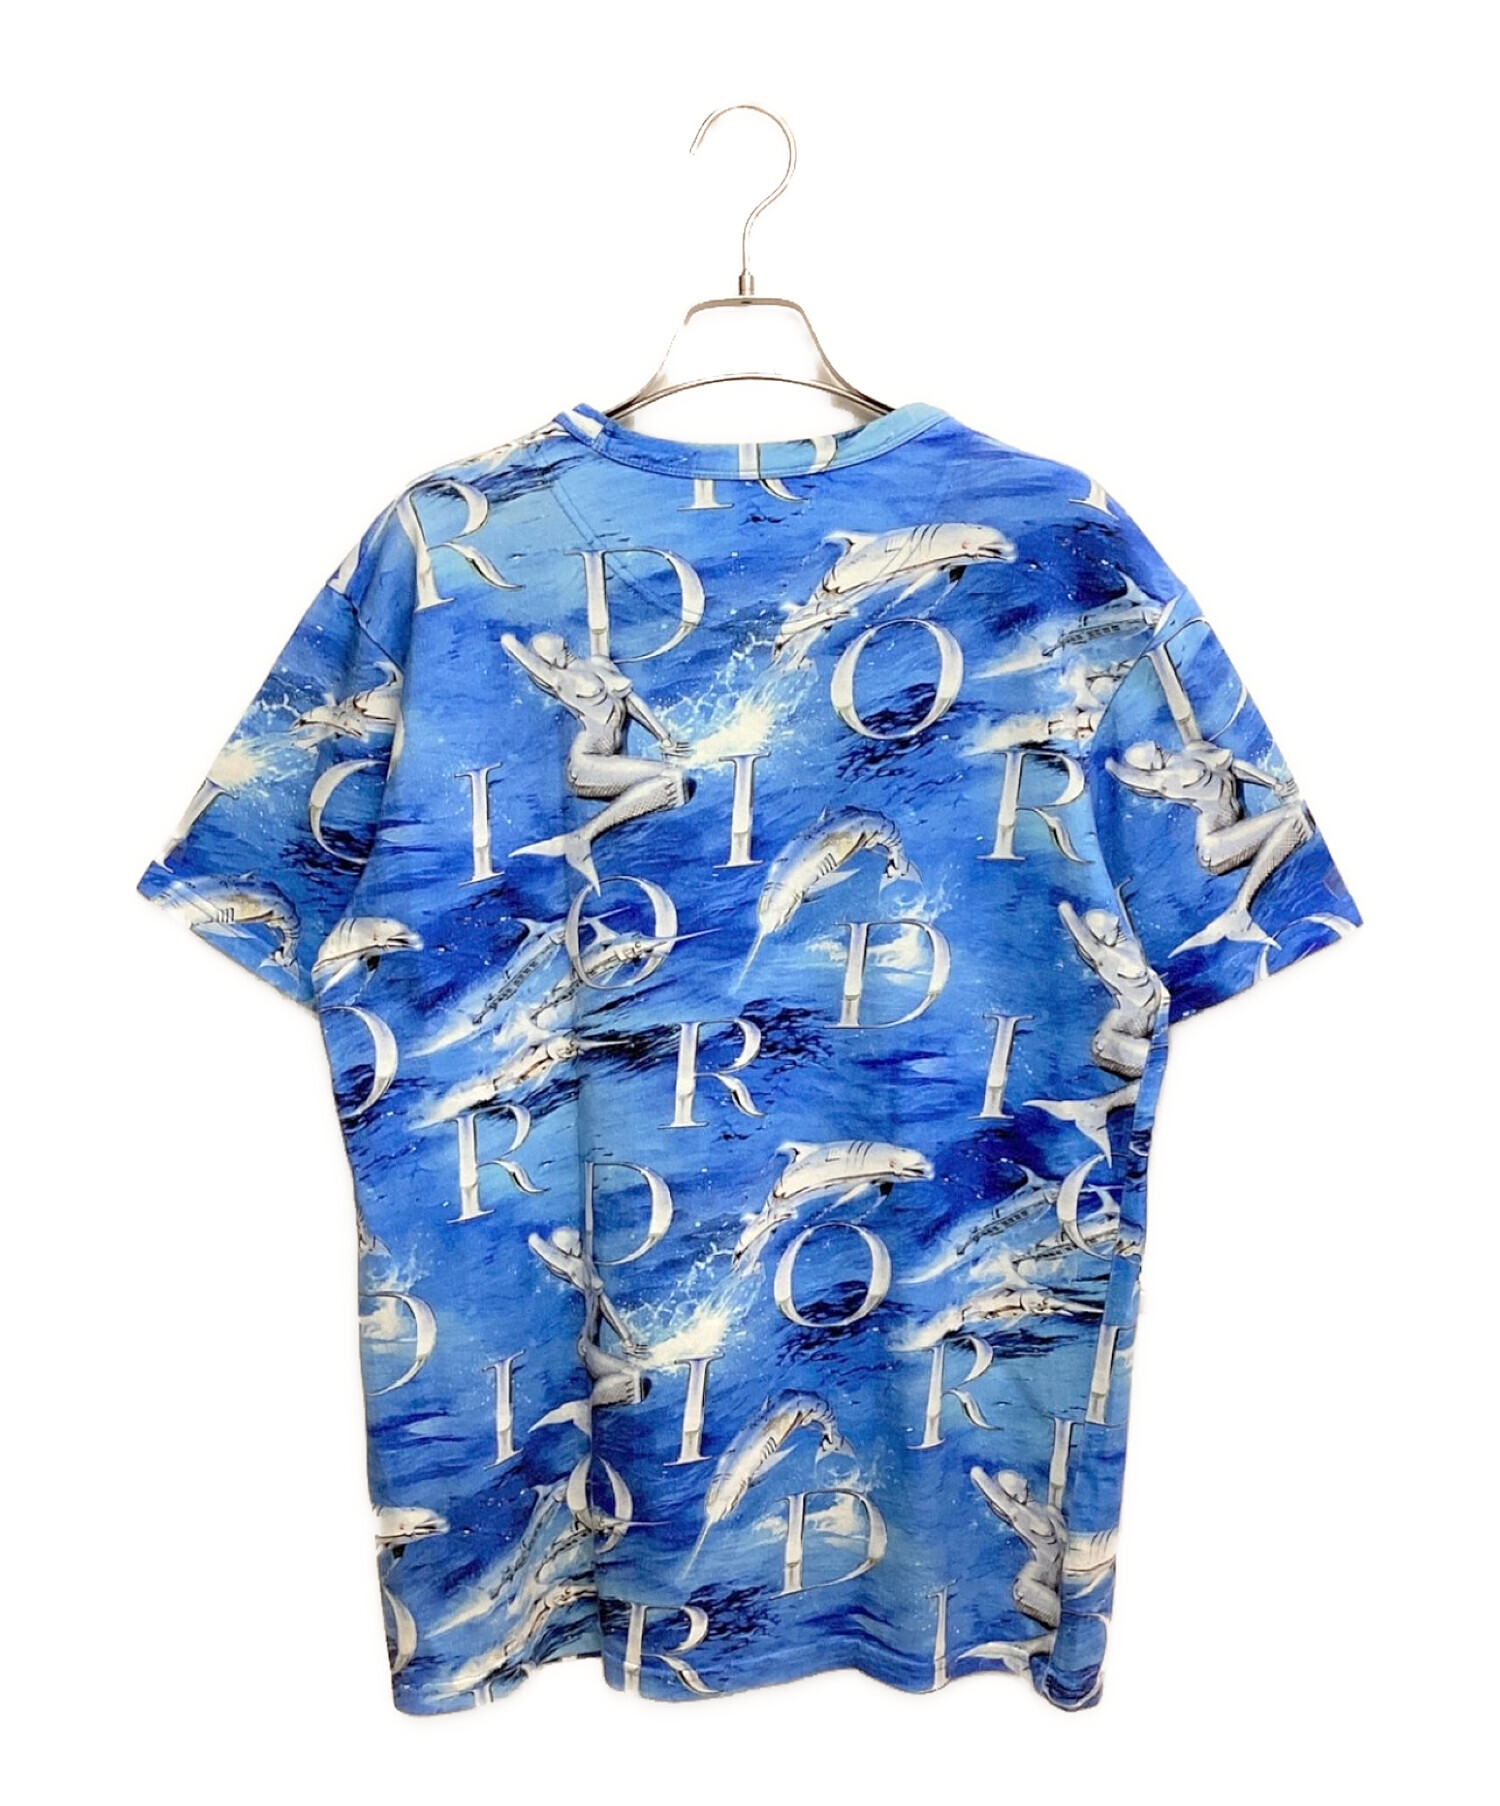 Dior (ディオール) 空山基 (ソラヤマハジメ) ロボットTシャツ ブルー サイズ:S